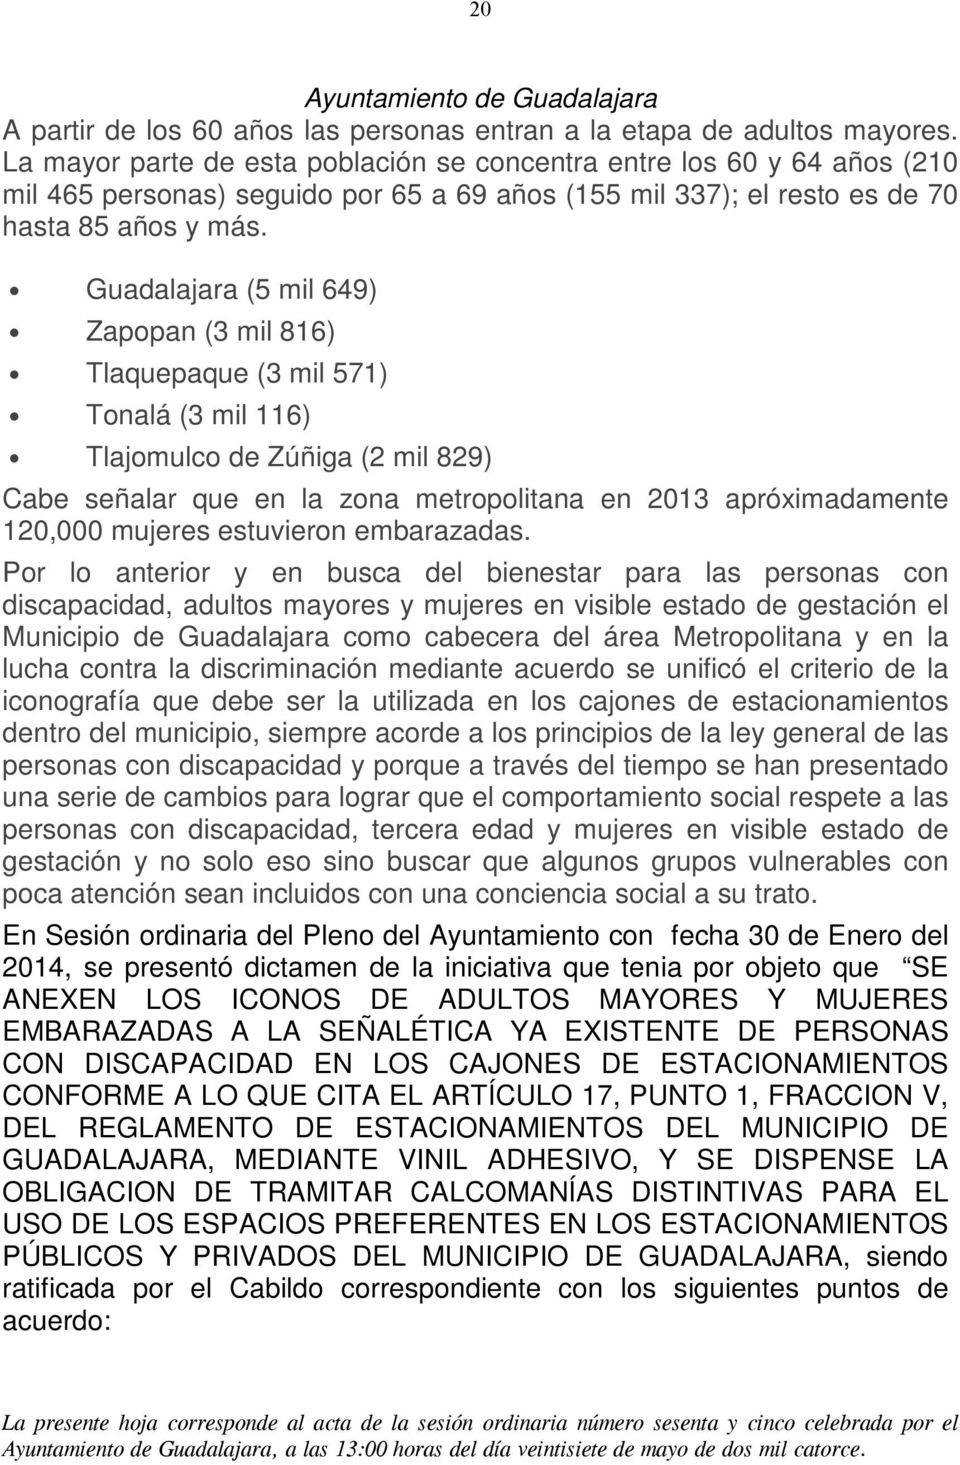 Guadalajara (5 mil 649) Zapopan (3 mil 816) Tlaquepaque (3 mil 571) Tonalá (3 mil 116) Tlajomulco de Zúñiga (2 mil 829) Cabe señalar que en la zona metropolitana en 2013 apróximadamente 120,000